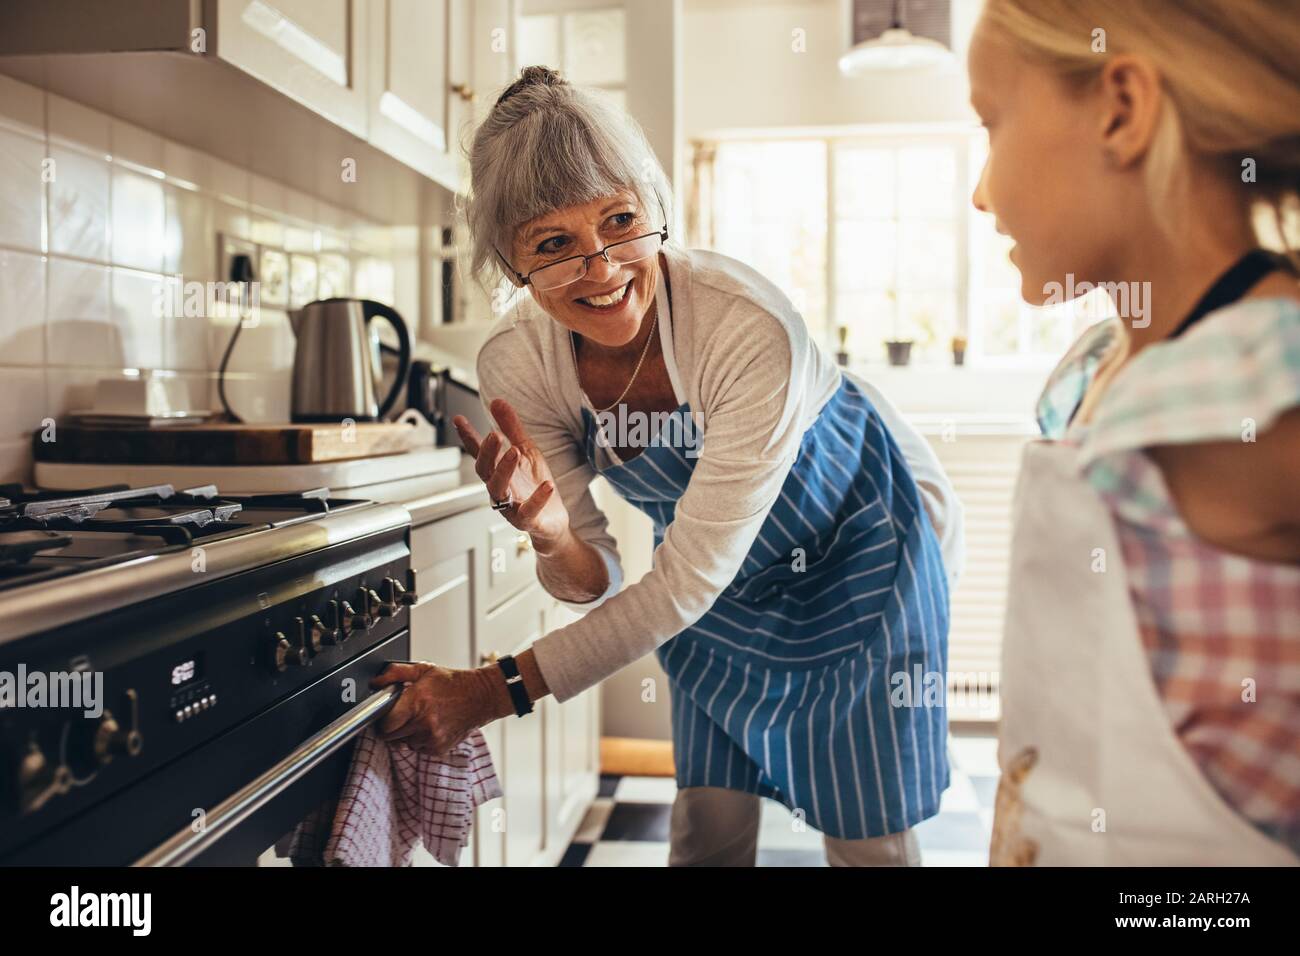 Lächelnde Seniorin in der Schürze, die die Backofentür öffnet. Fröhliche Granny und Kind in der Küche zusammen kochen. Stockfoto